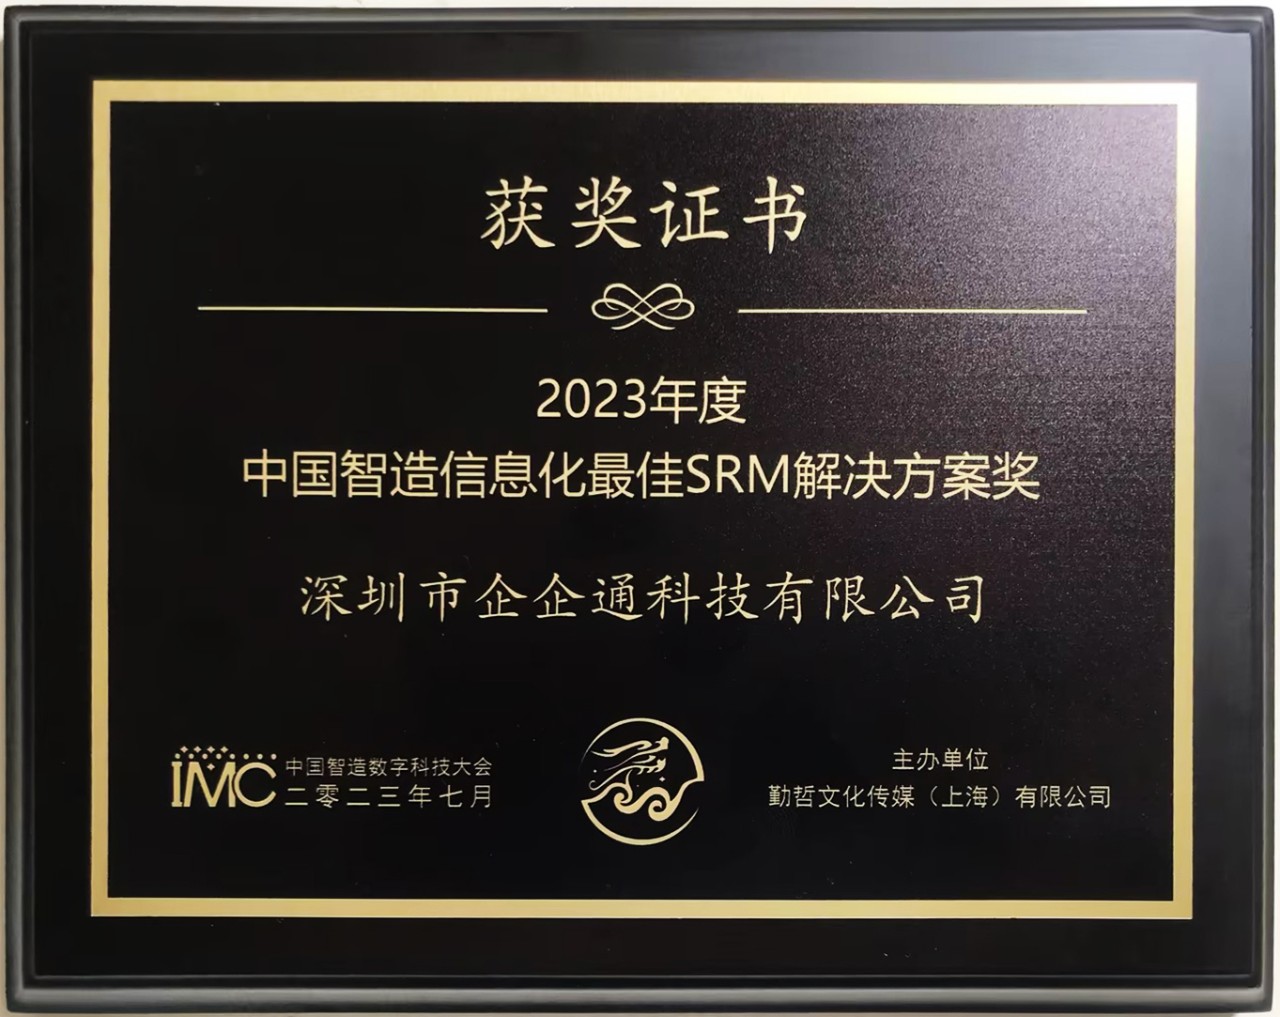 企企通荣膺“2023年度中国制造信息化最佳SRM解决方案奖”，助力制造企业高效发展